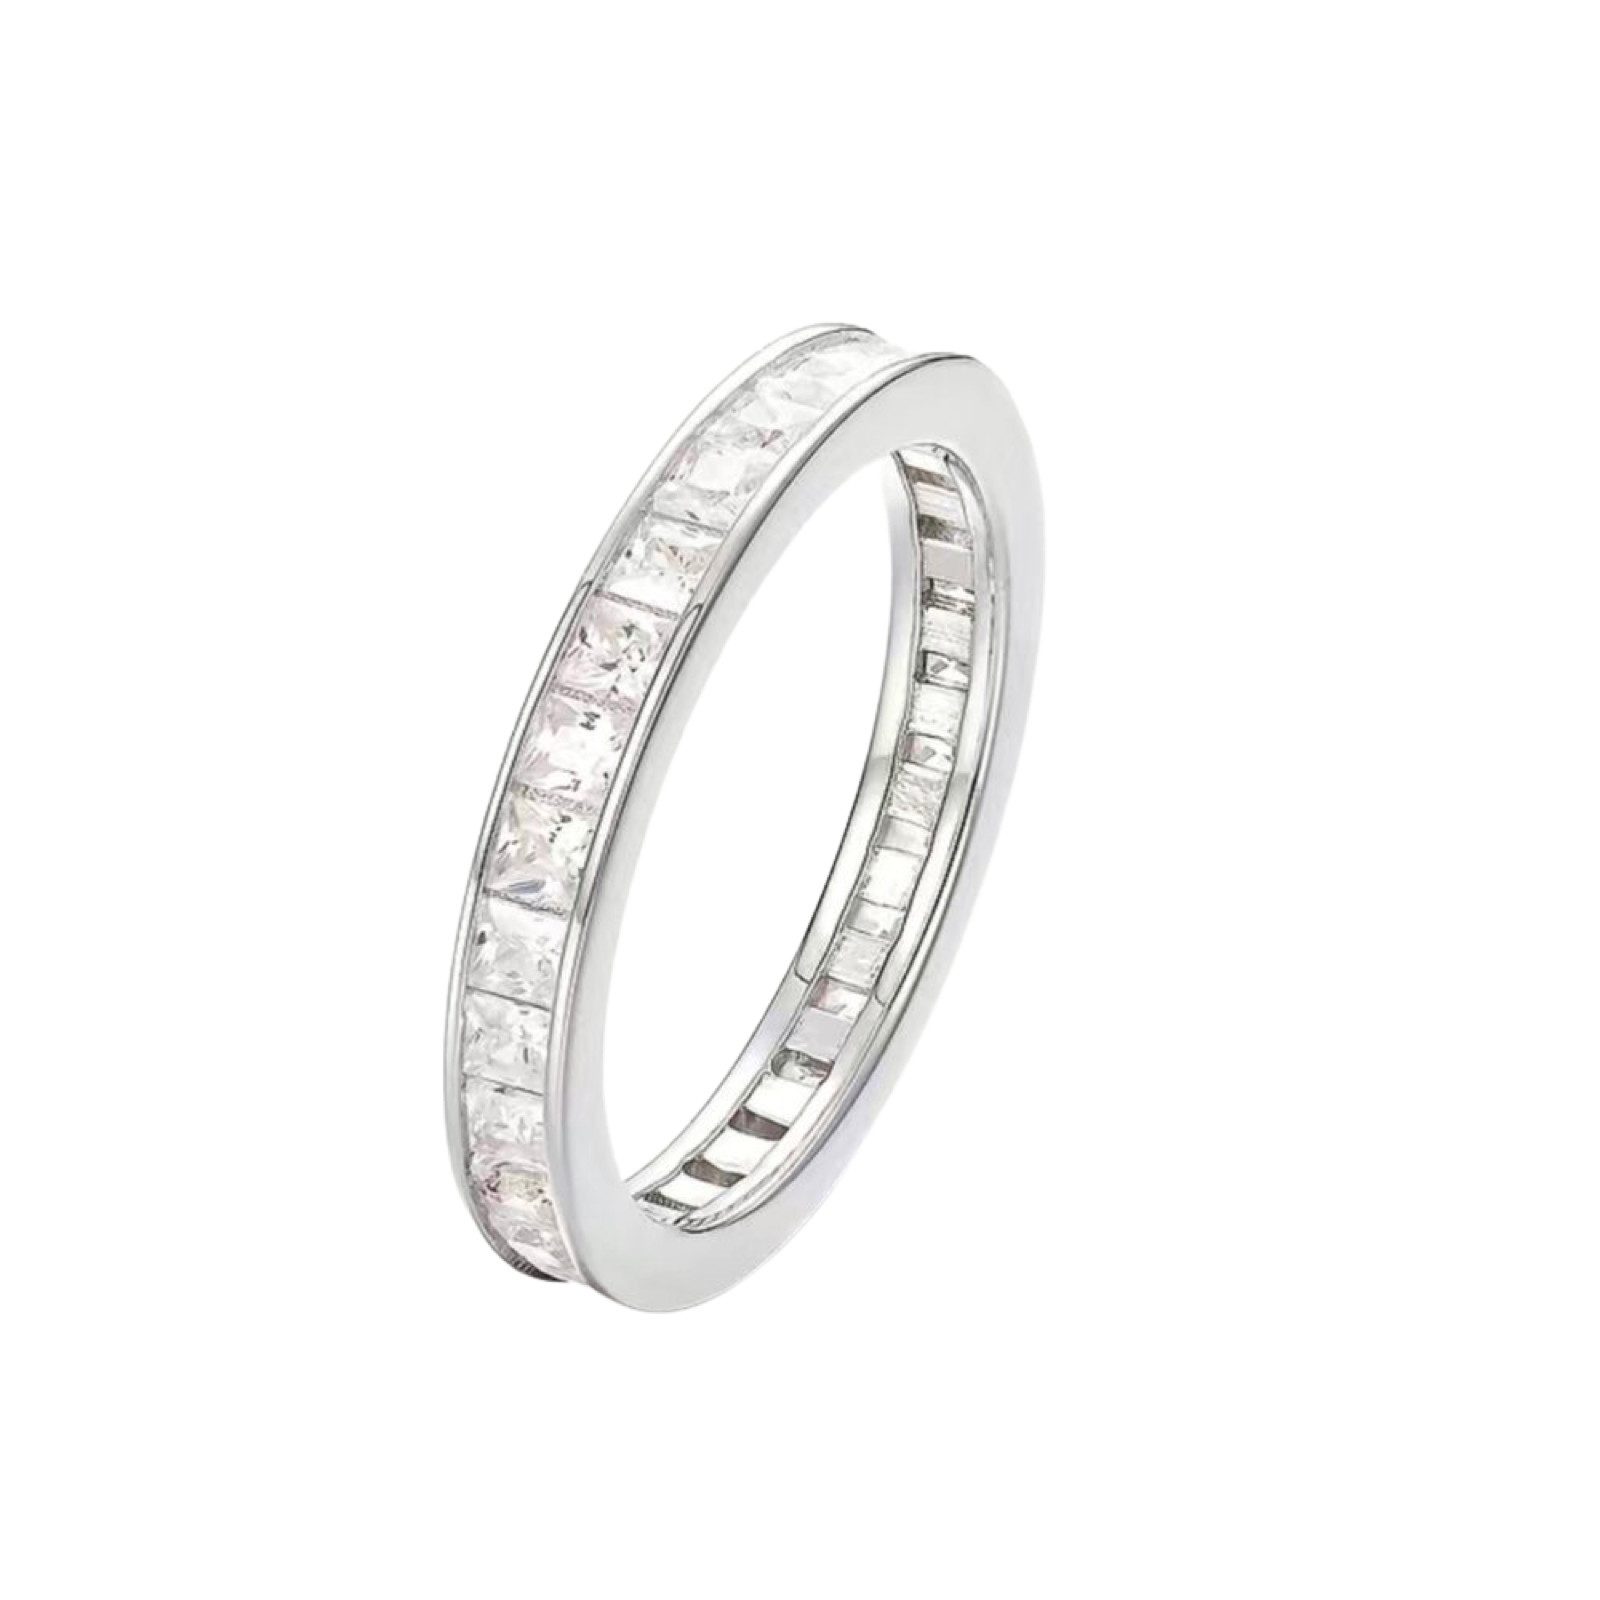 ROUGEMONT Memoirering Luxuriöser Memoirering 925 Silber Ring für Damen Regenbogen Design, Wasserfest